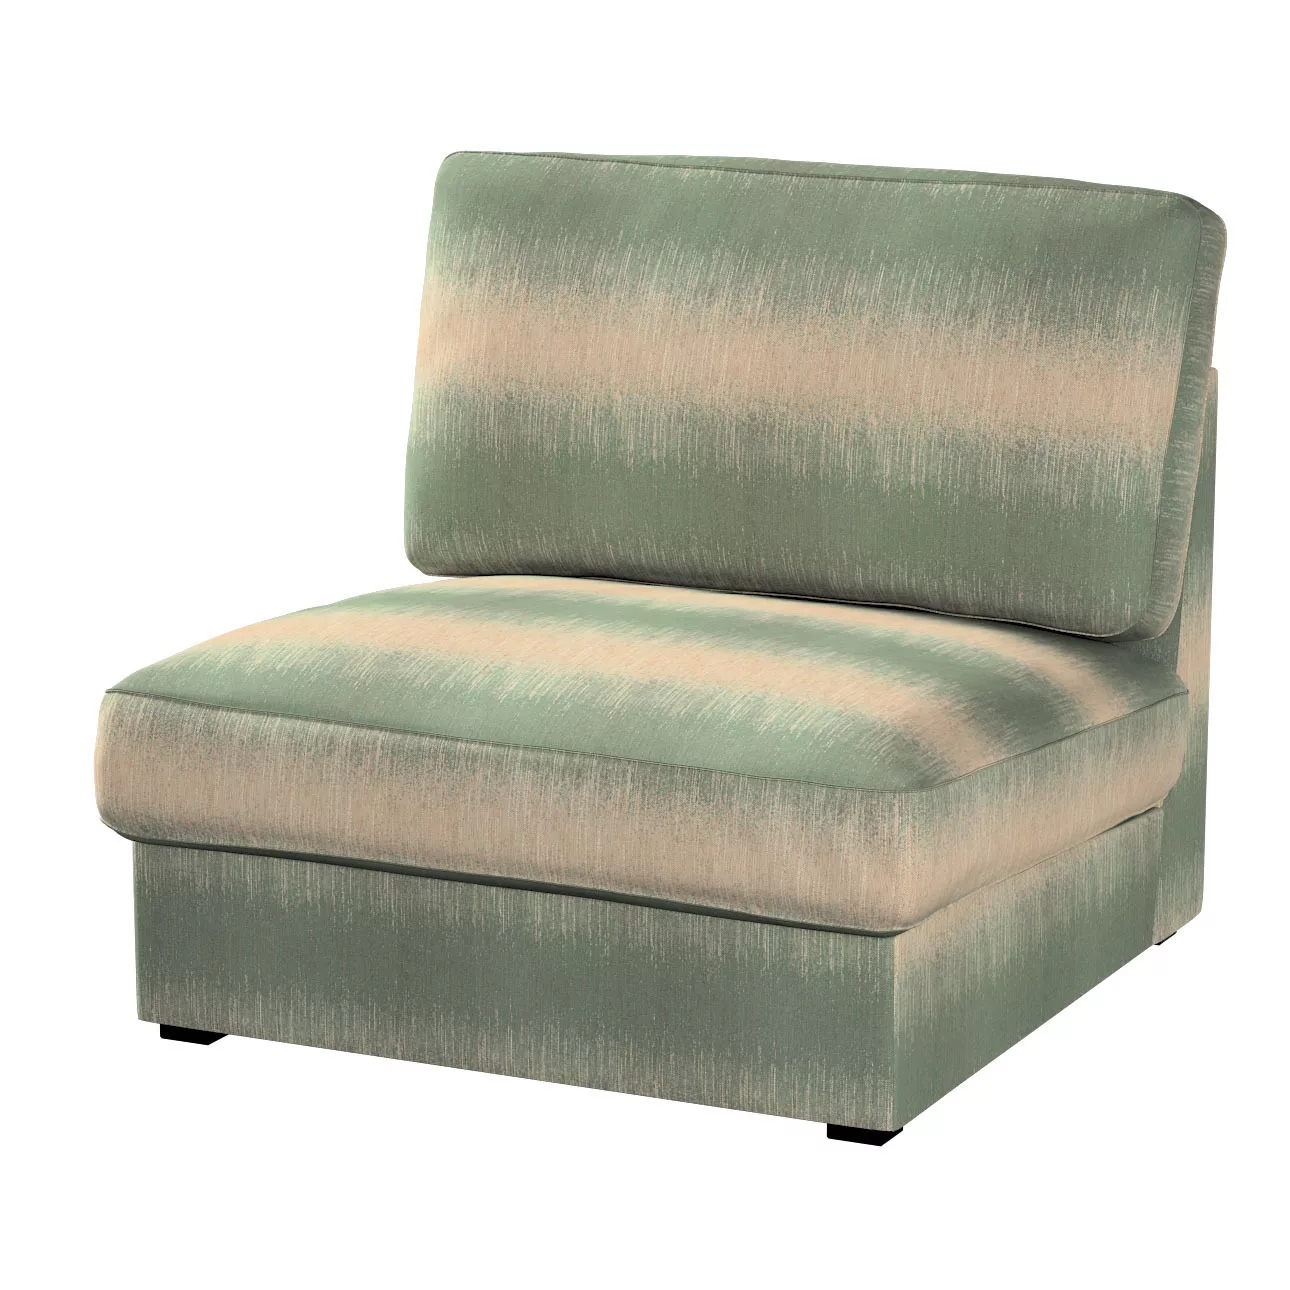 Bezug für Kivik Sessel nicht ausklappbar, grün-beige, Bezug für Sessel Kivi günstig online kaufen